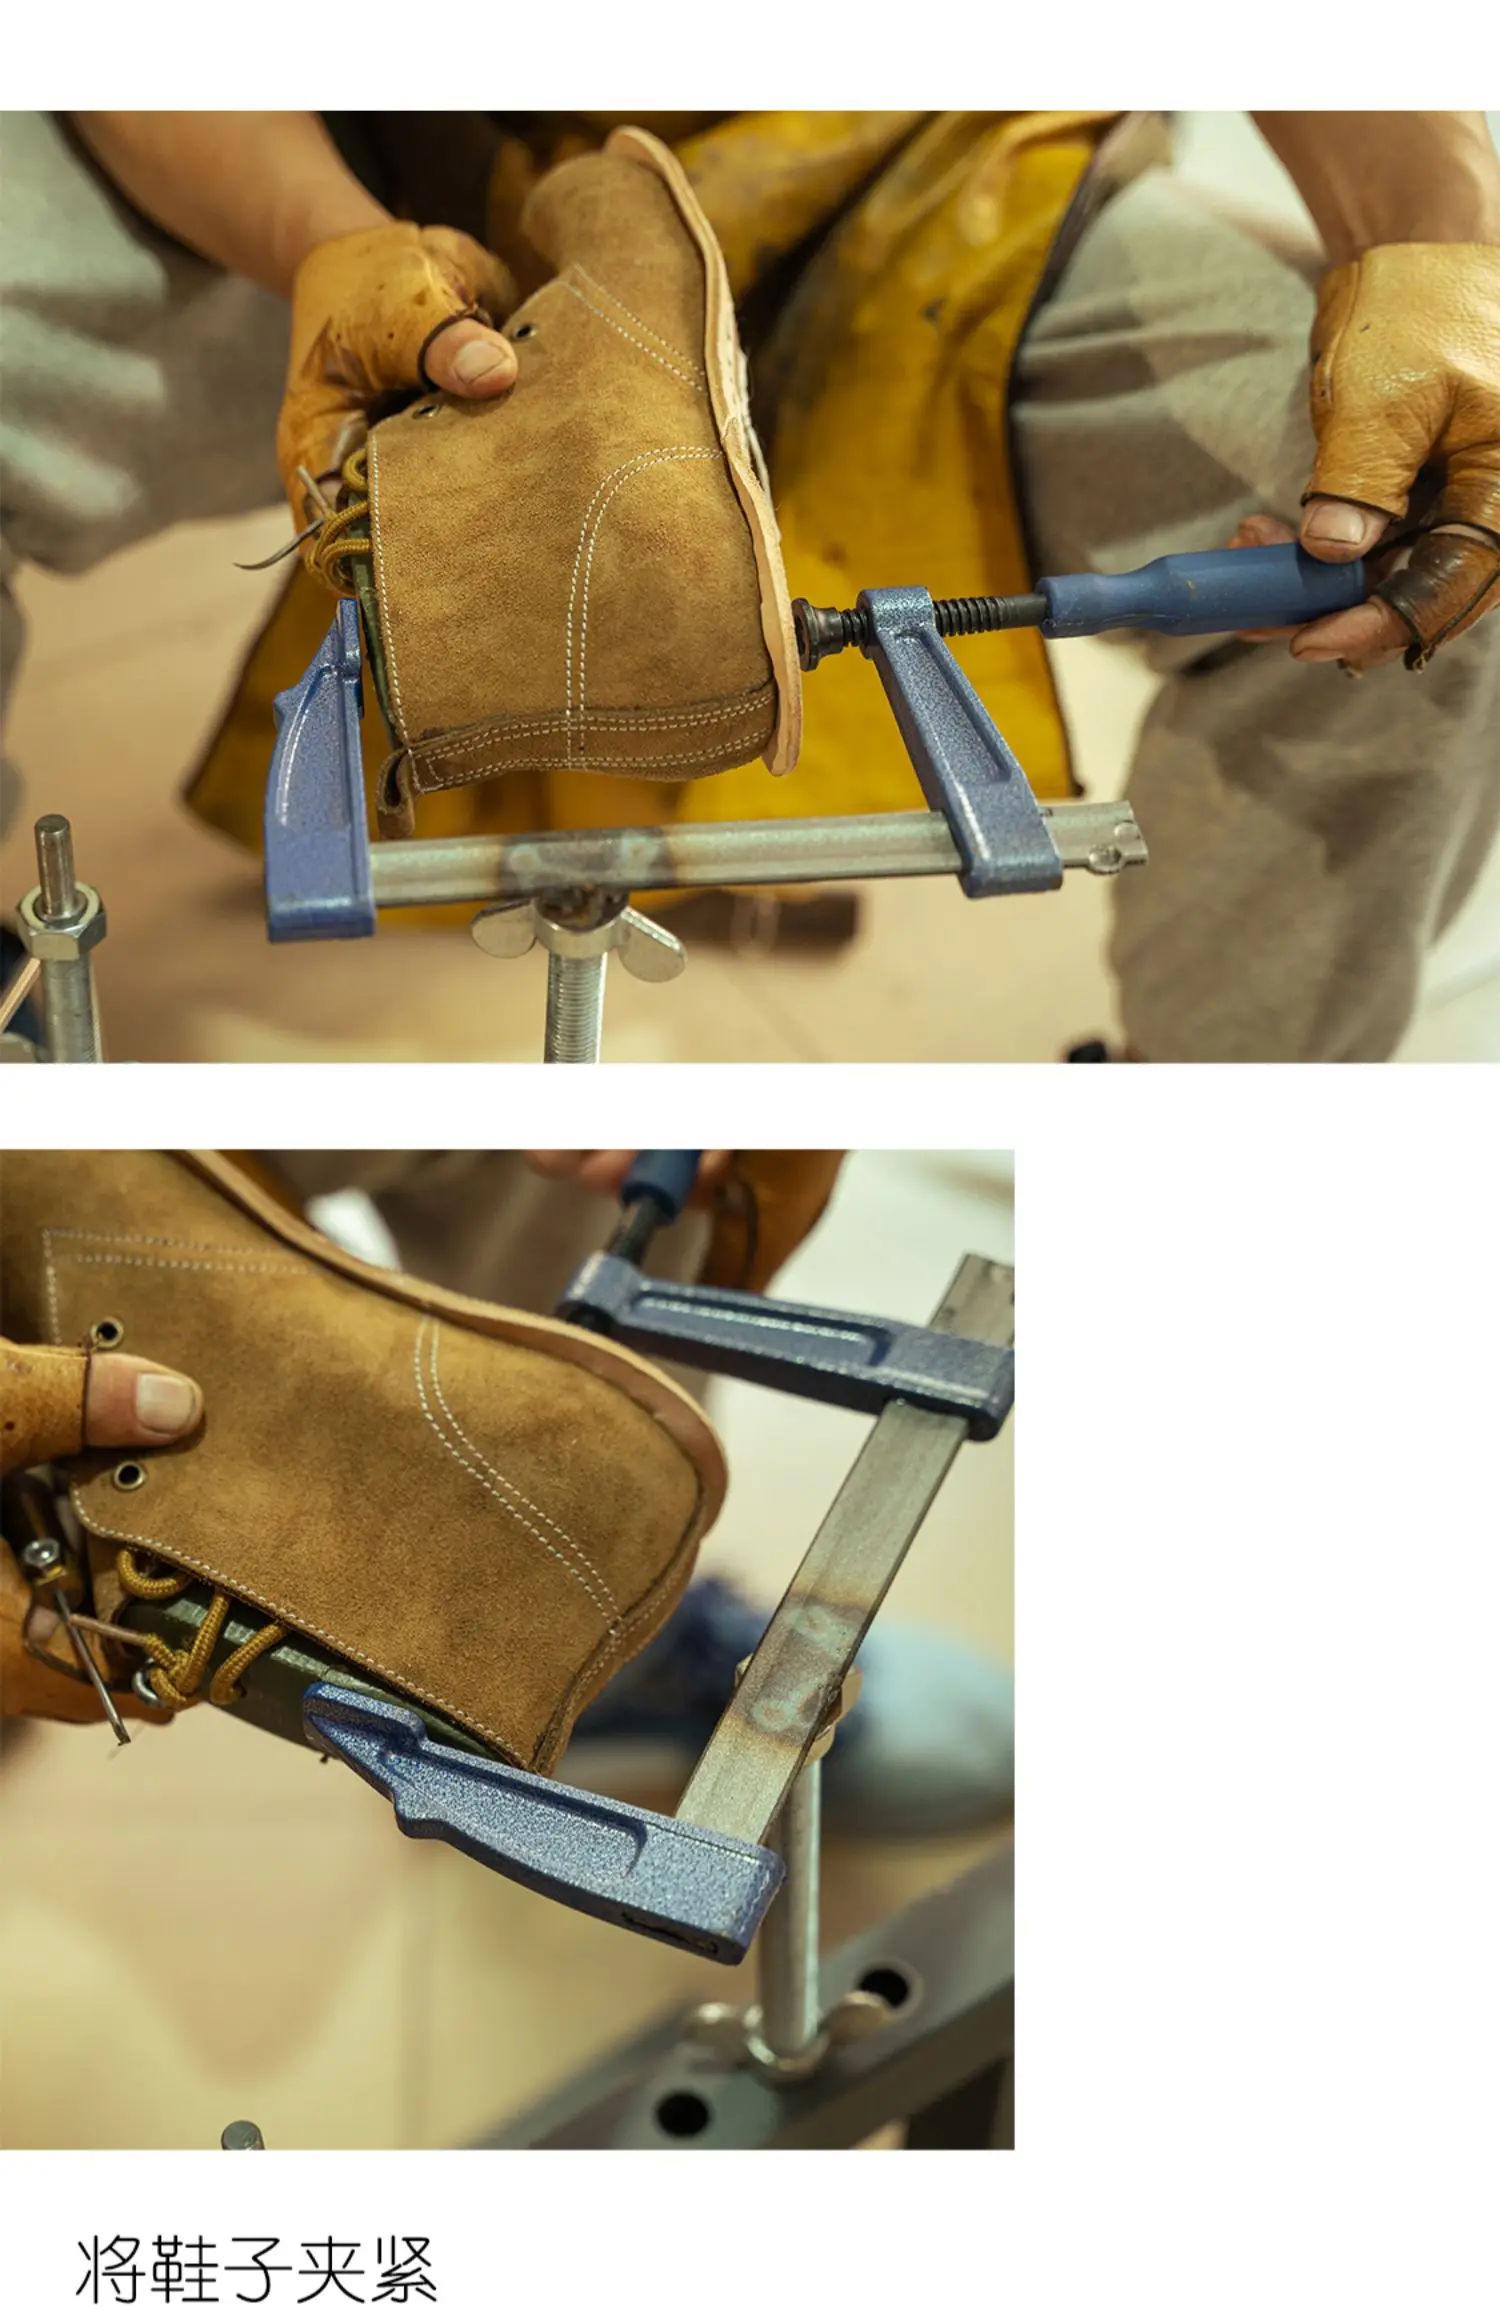 вспомогательный инструмент для изготовления обуви framediy для изготовления обуви ручной работы инструмент для изготовления обуви